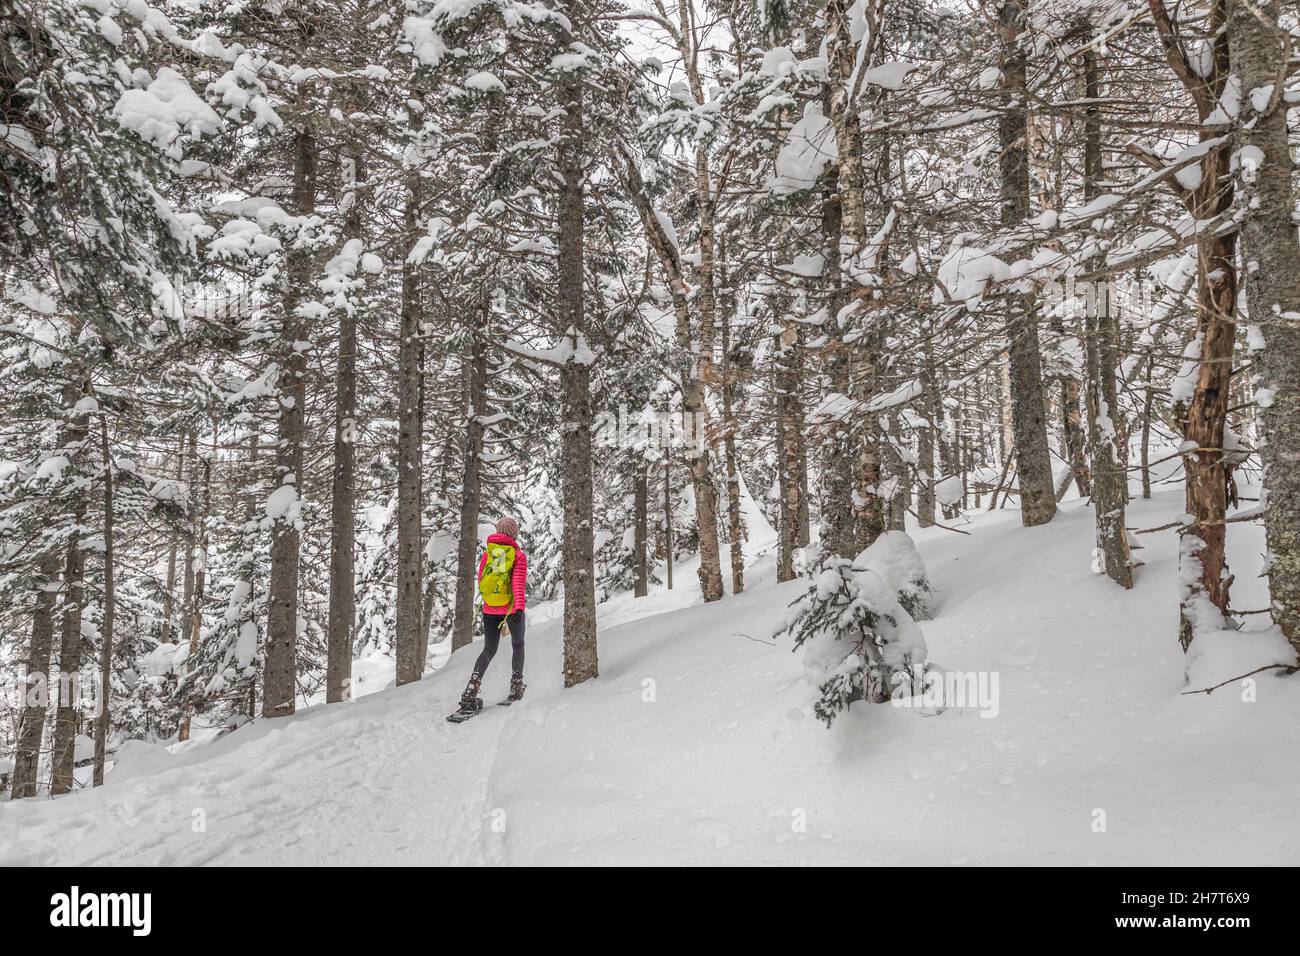 Activité hiver en raquettes.Femme en raquettes dans la forêt d'hiver avec des arbres couverts de neige.Les gens qui font de la randonnée dans la neige en raquettes vivent en bonne santé actif Banque D'Images